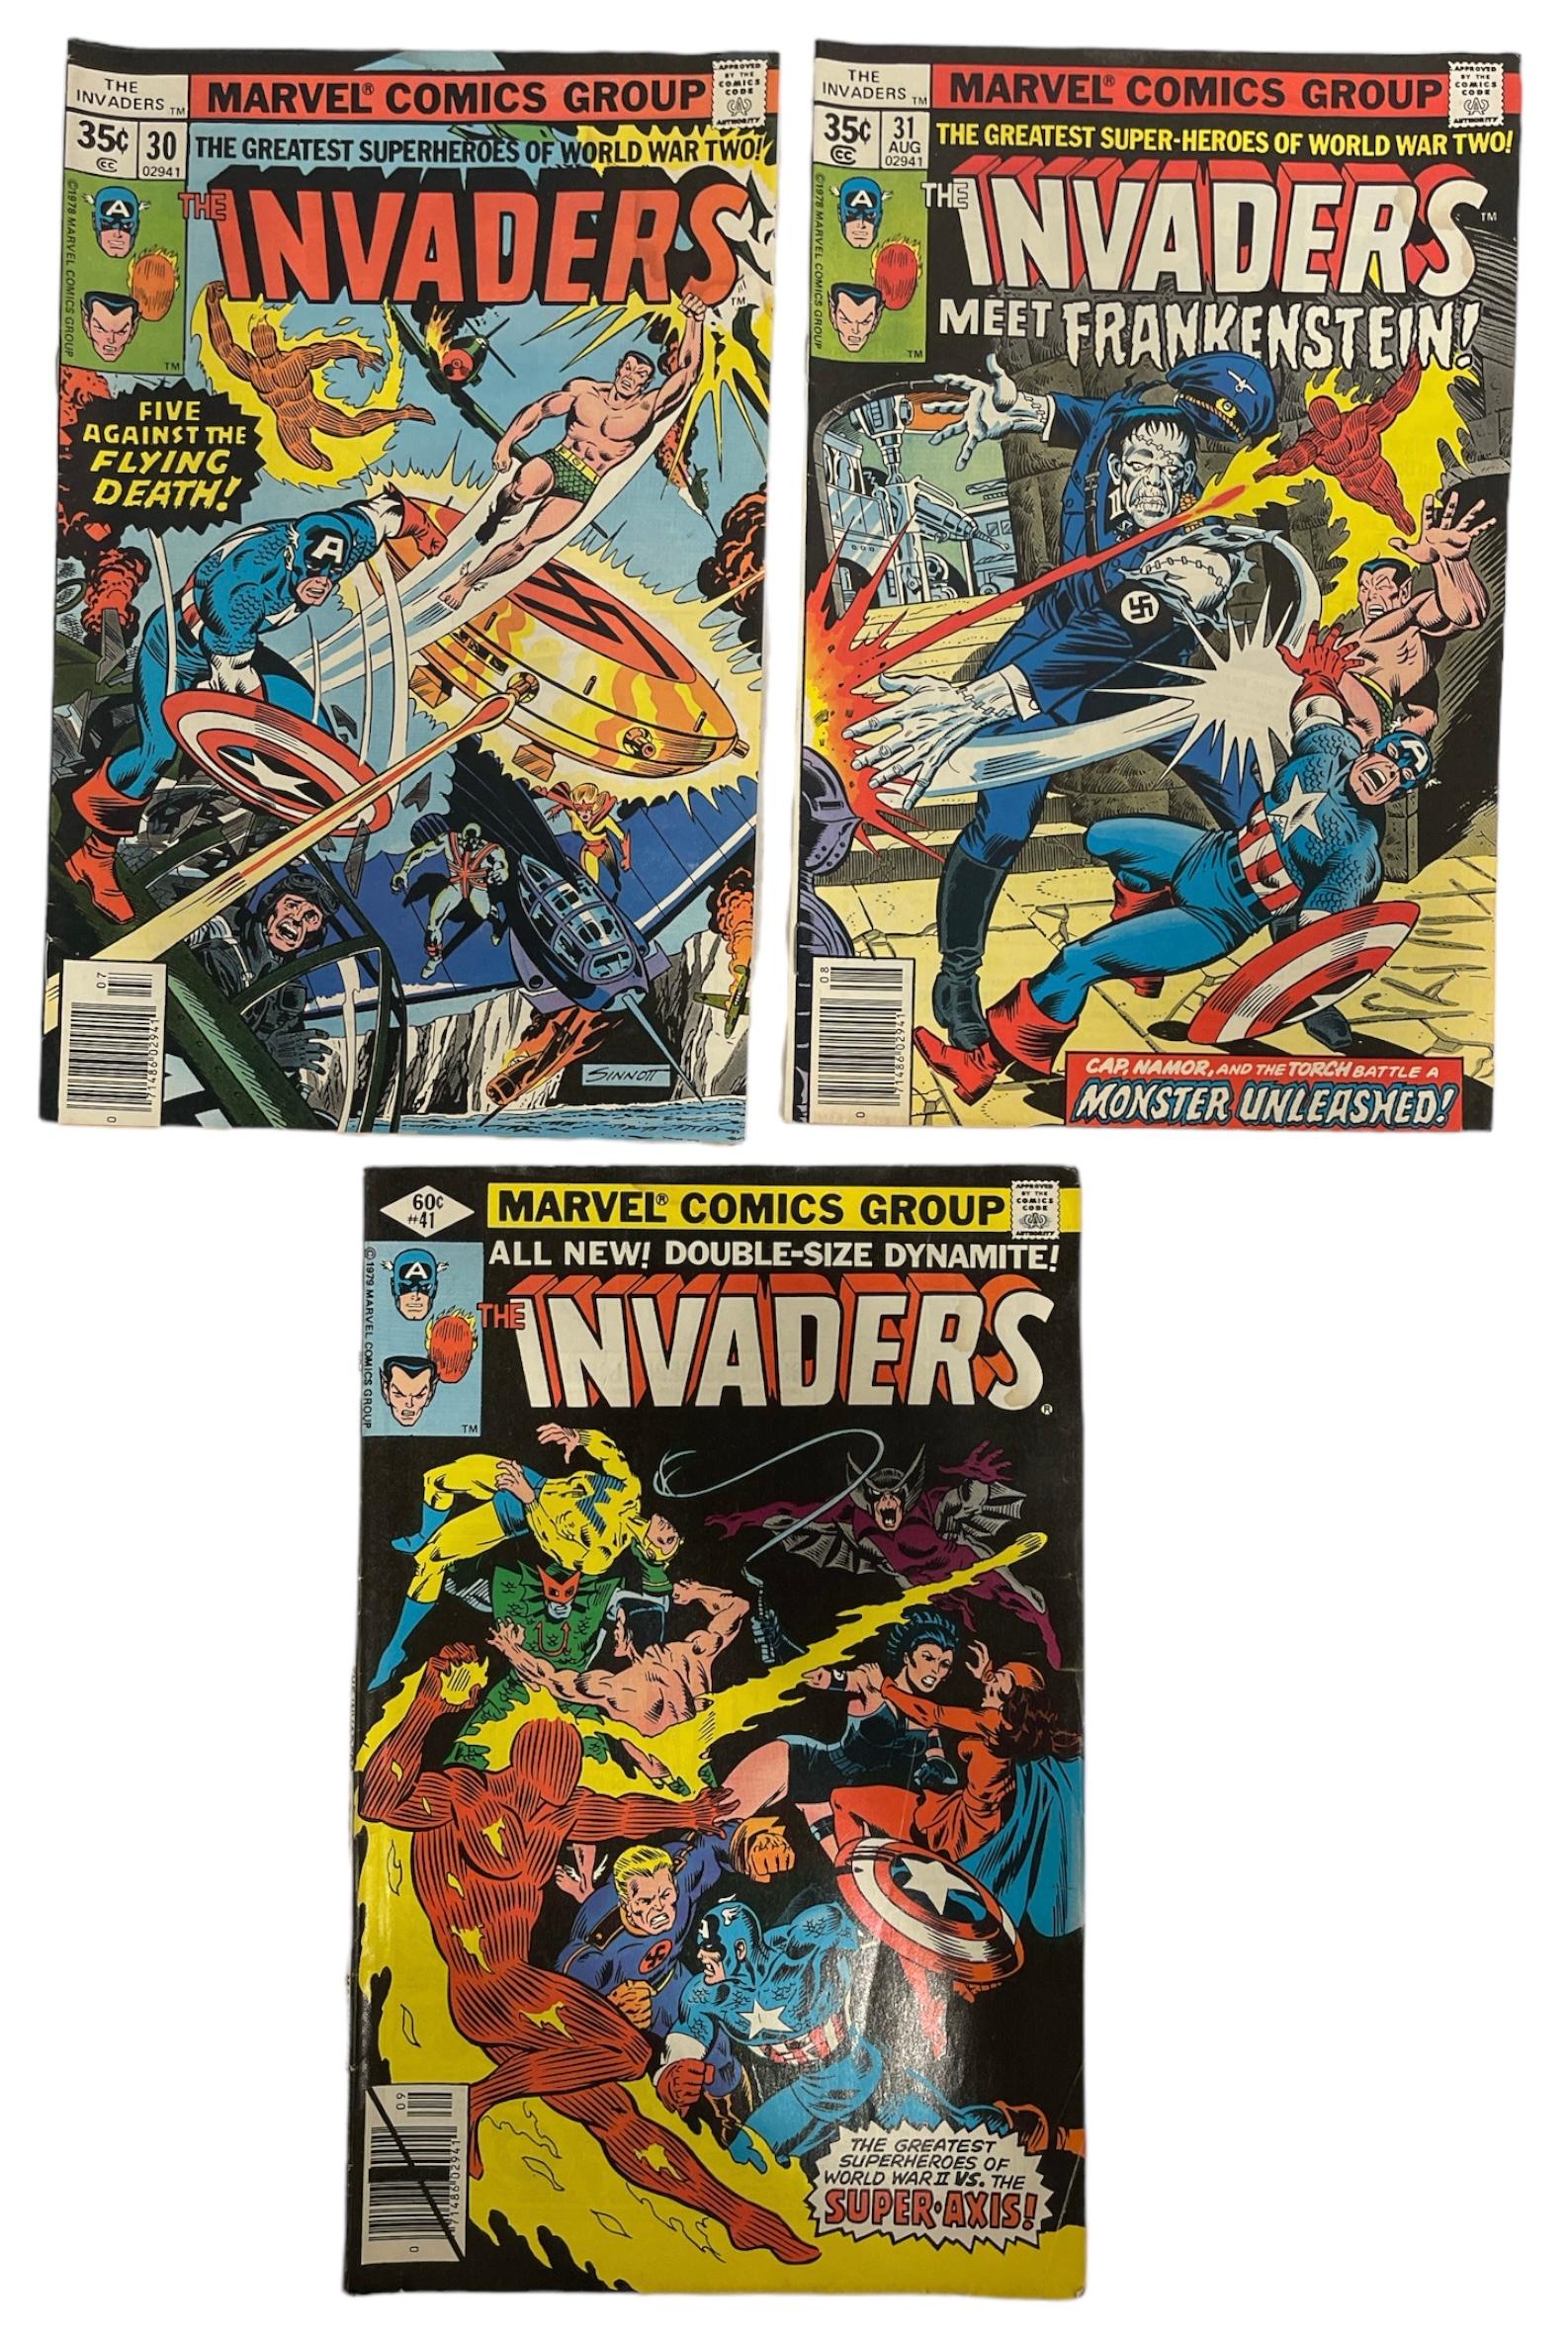 Vintage Marvel Comics